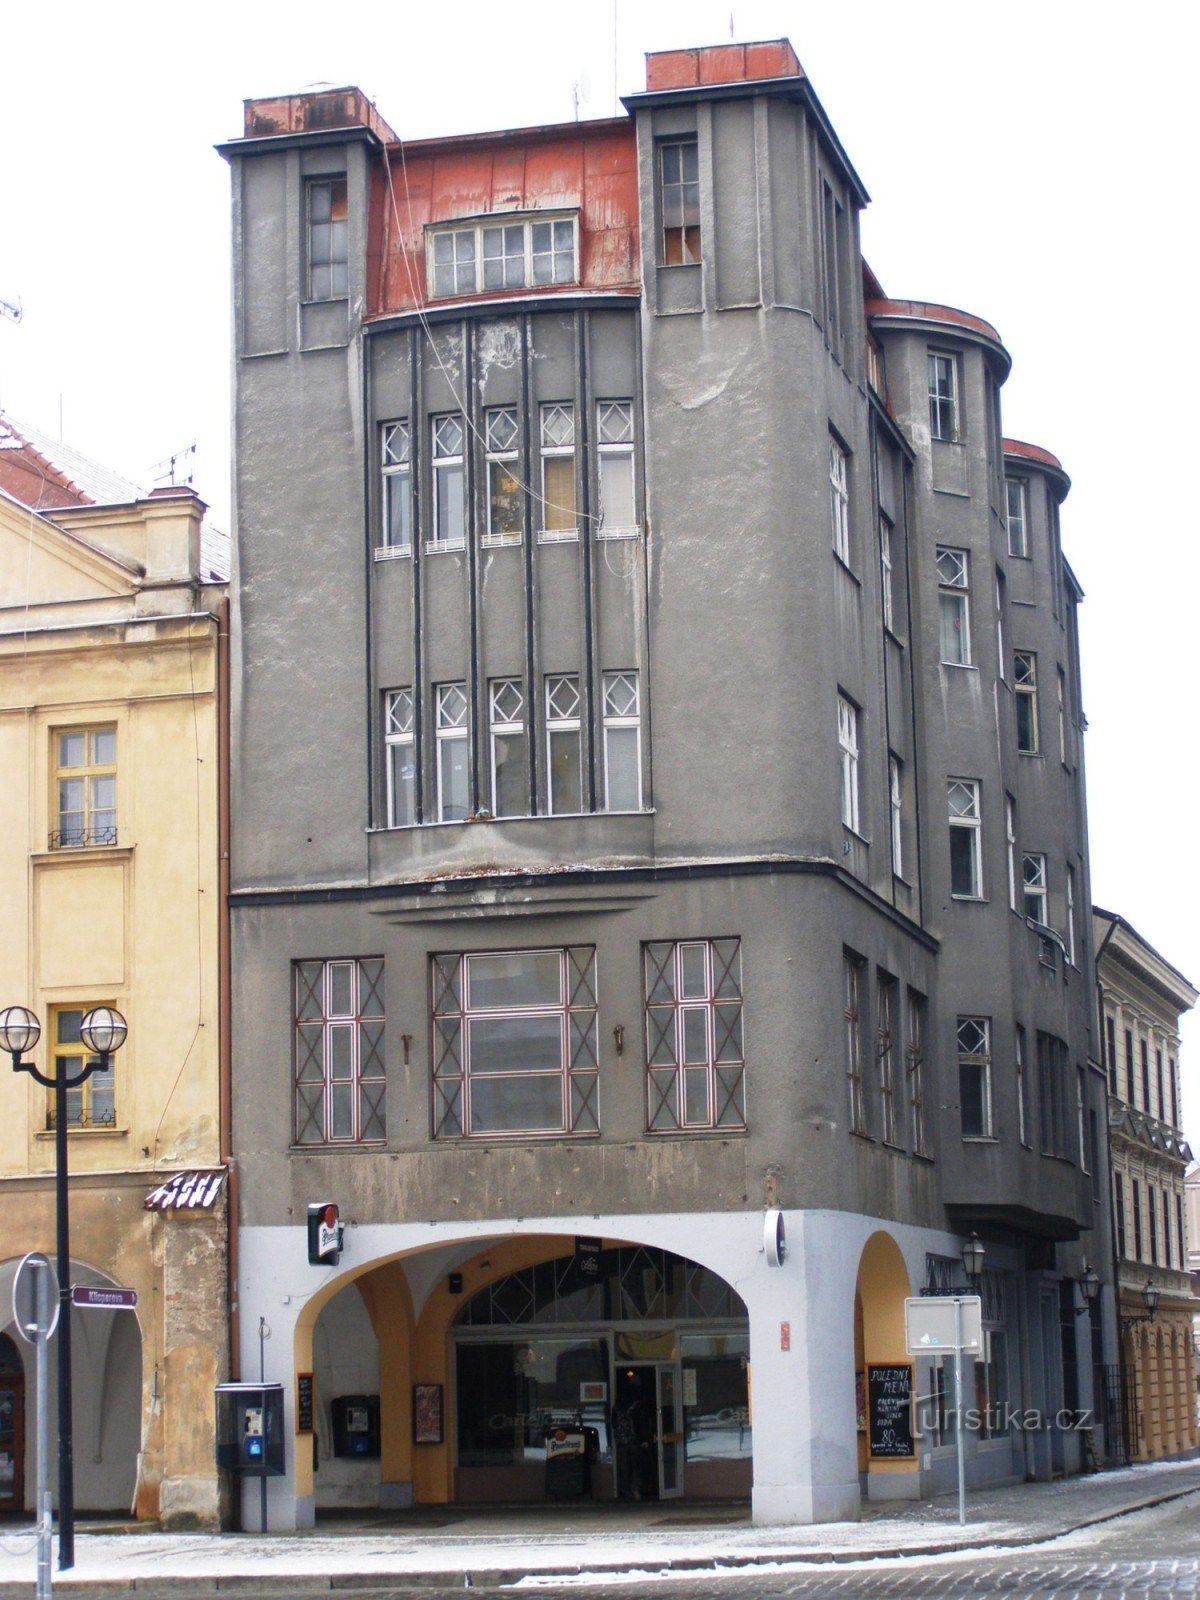 Hradec Králové - egykori Špalk áruház